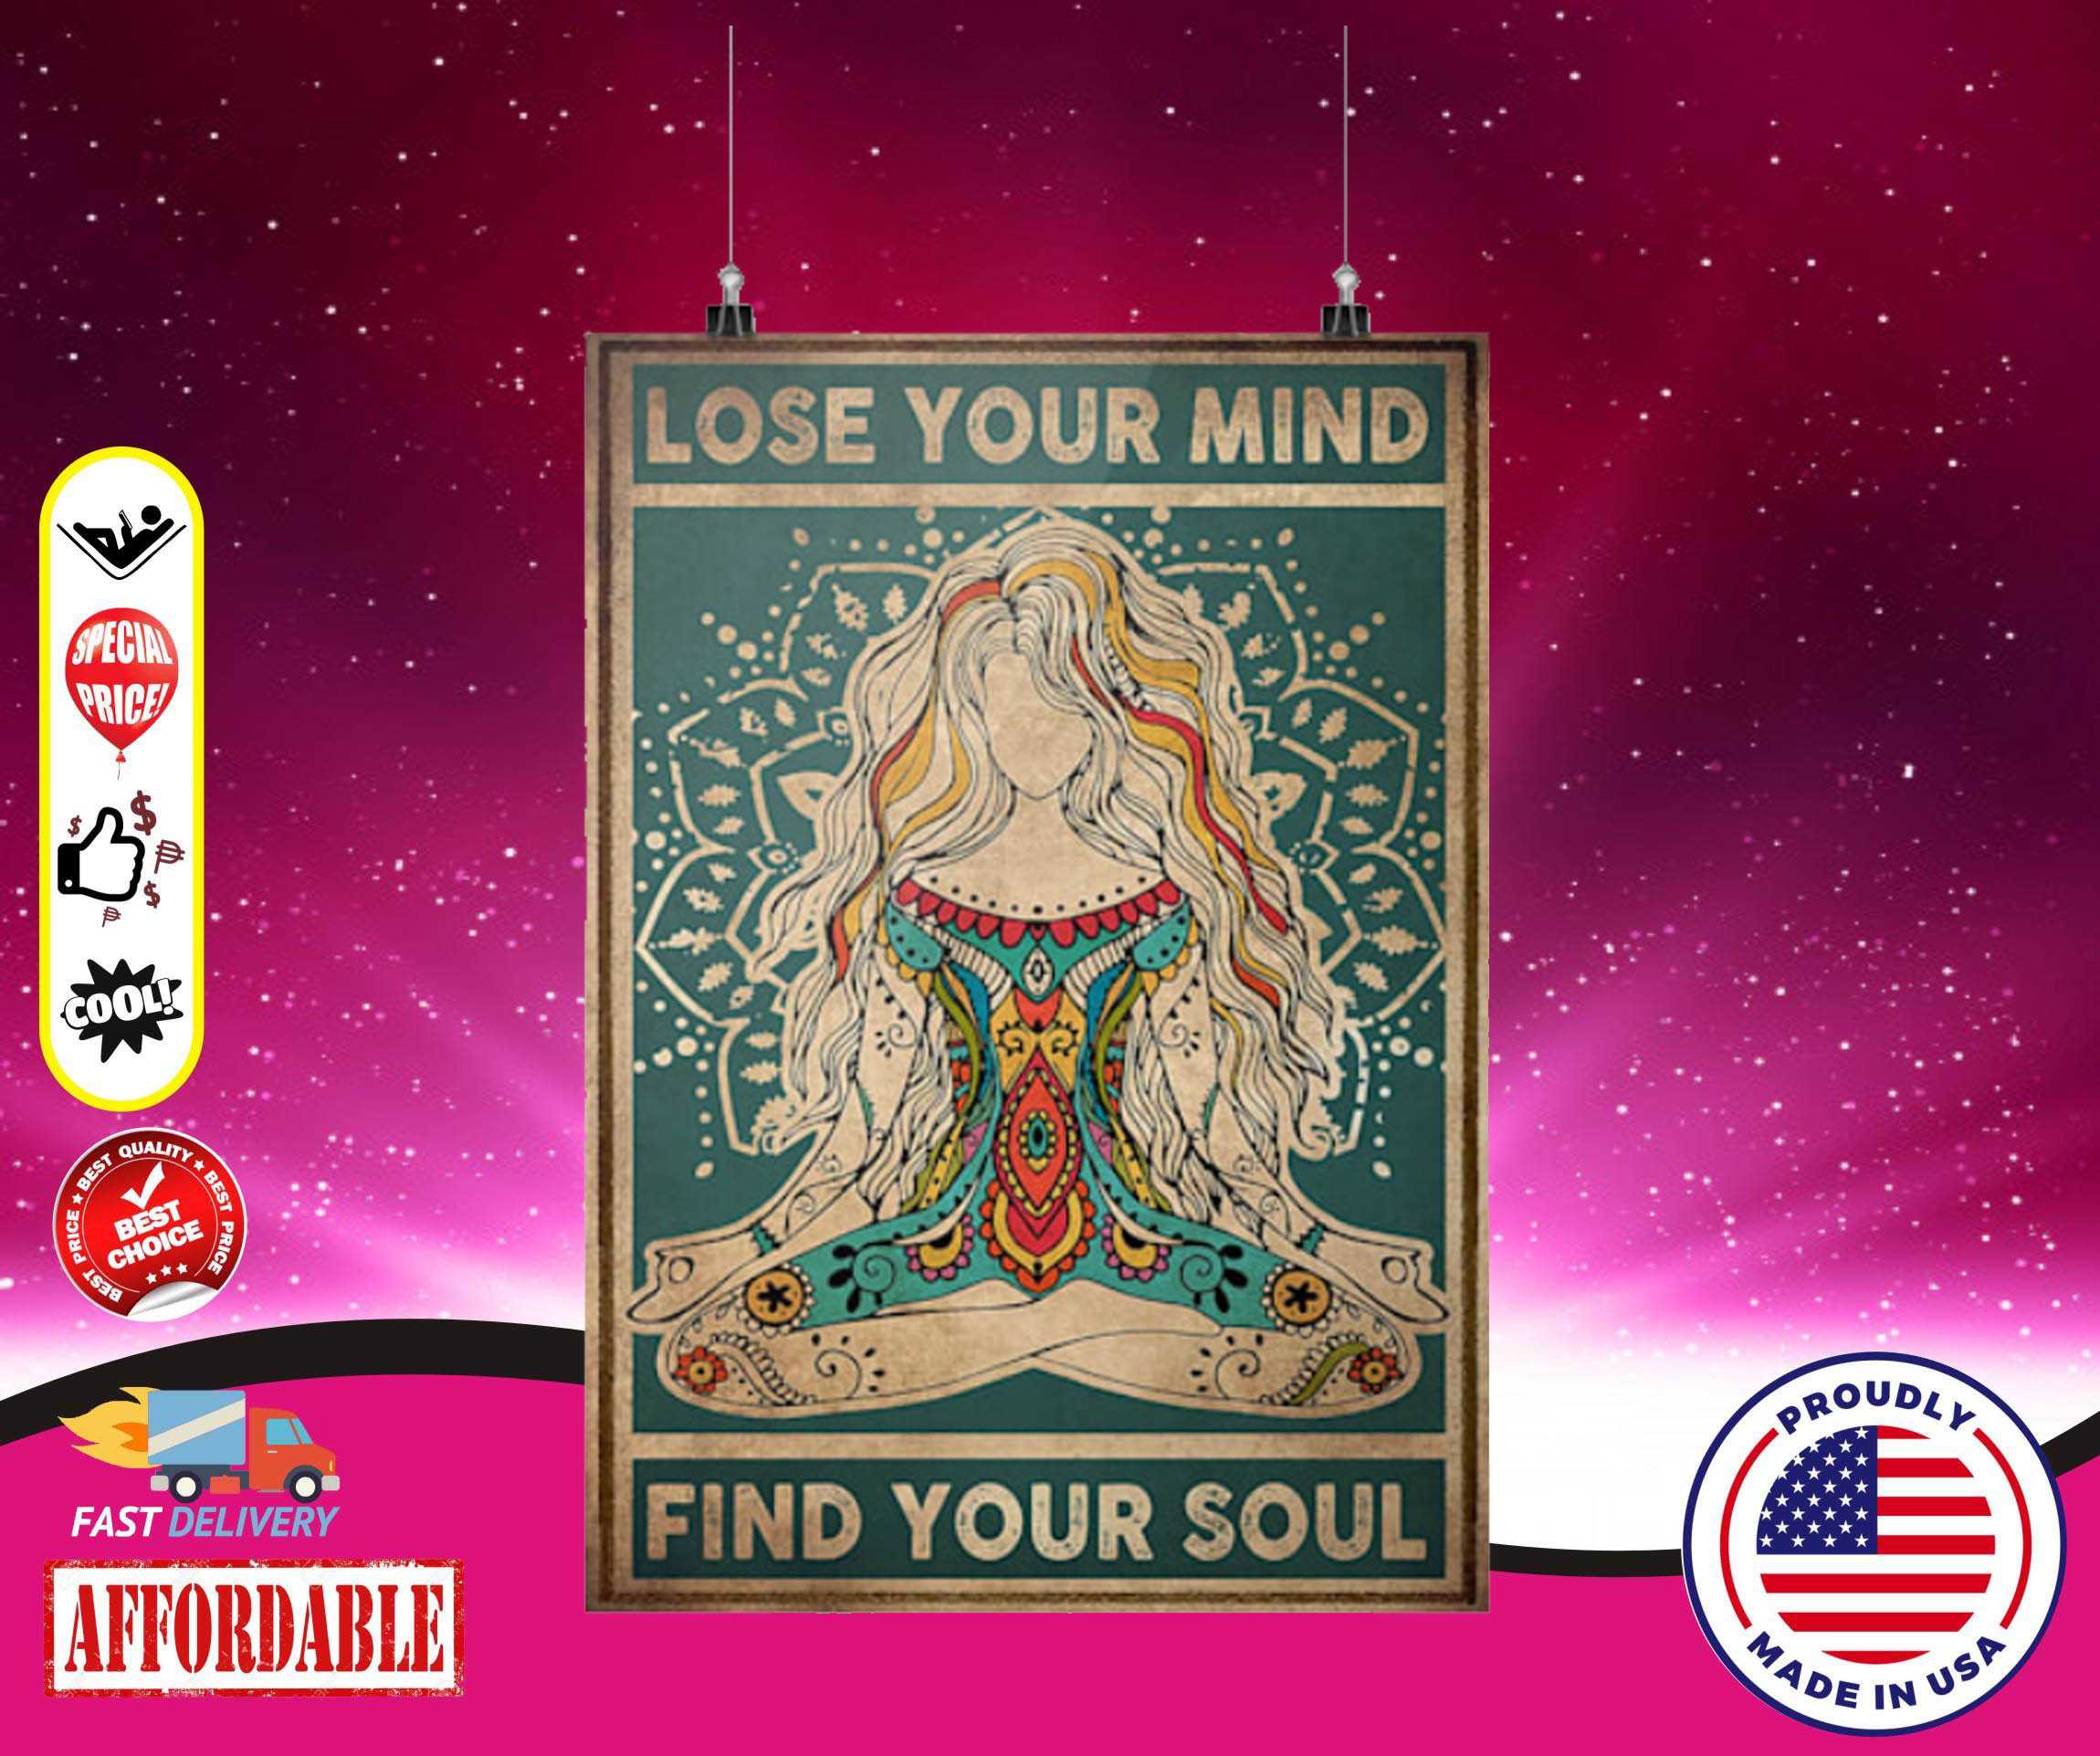 Meditation girl lose your mind find your soul poster 4